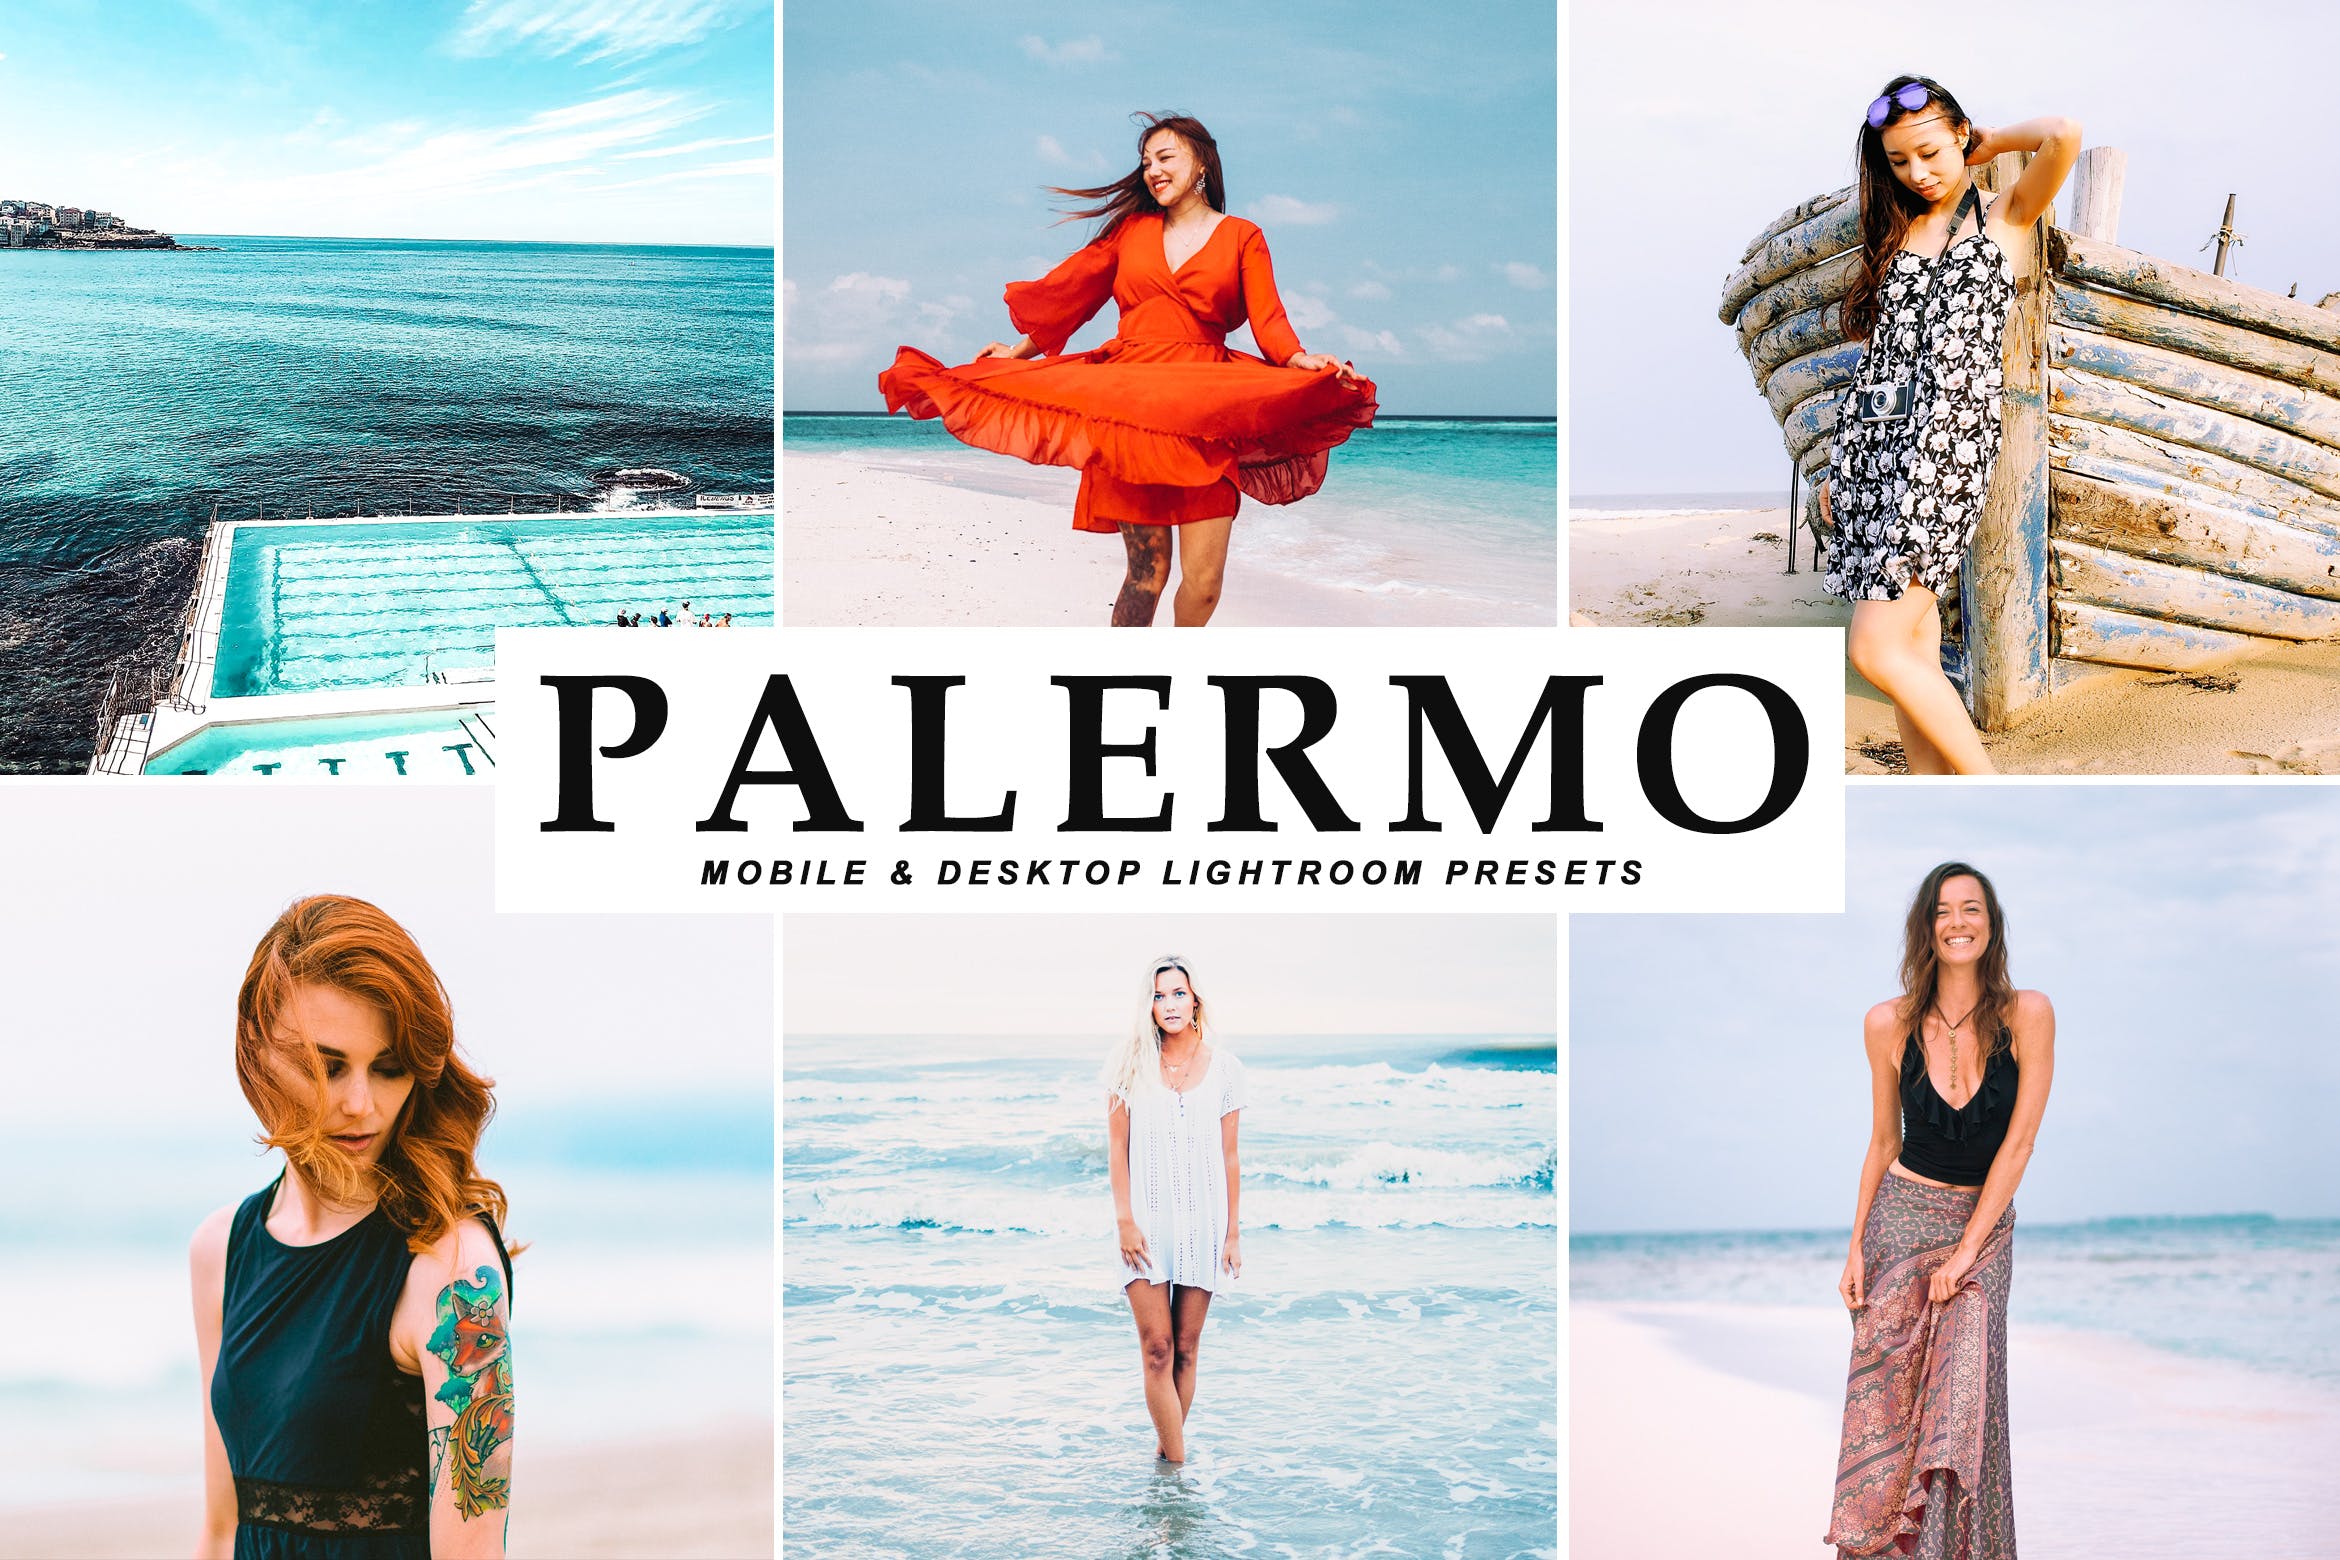 沙滩海岛阳光照片调色滤镜16素材精选LR预设 Palermo Mobile & Desktop Lightroom Presets插图